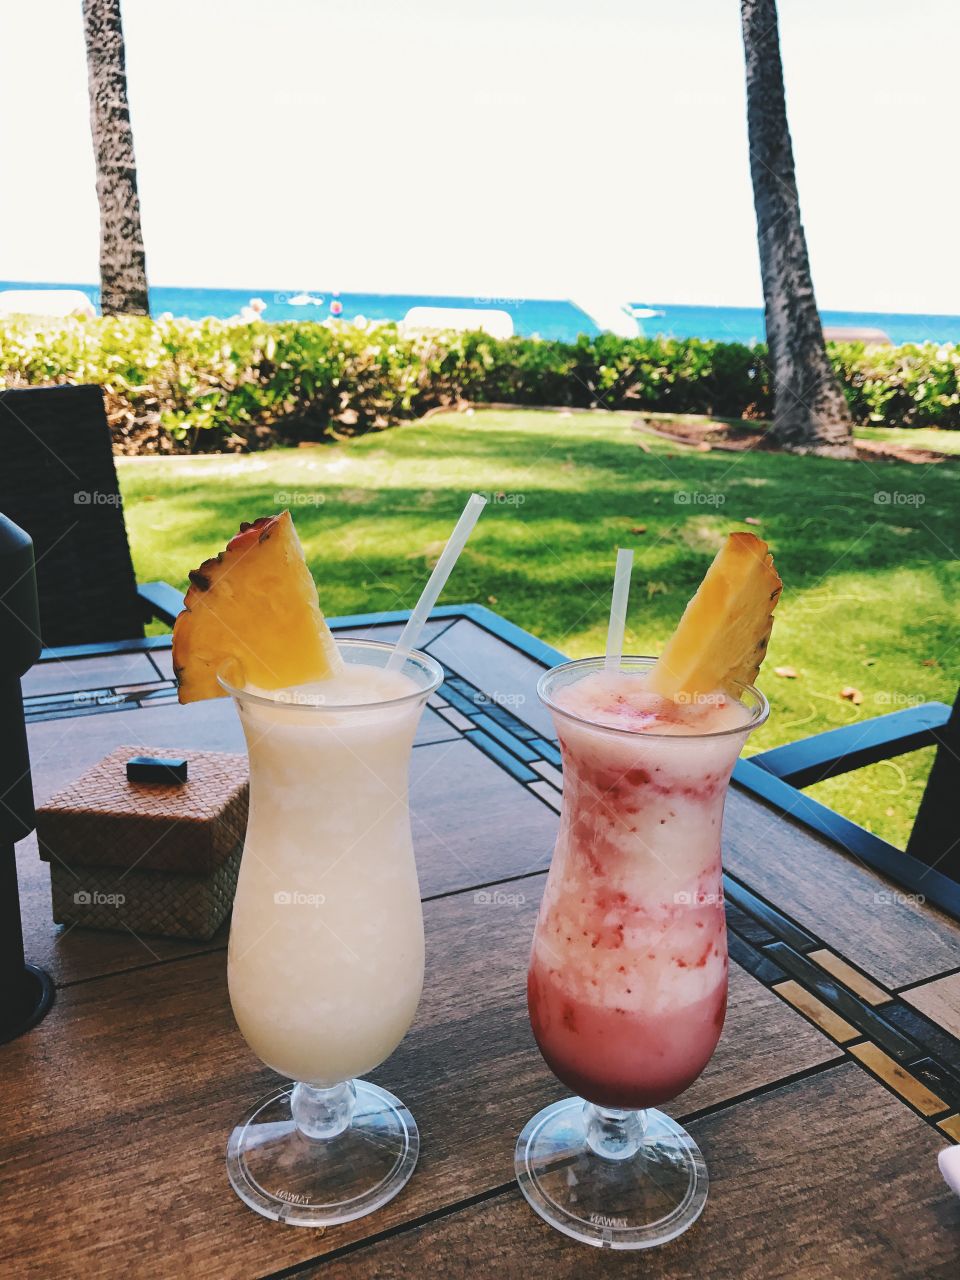 Tropical drinks Maui, HI